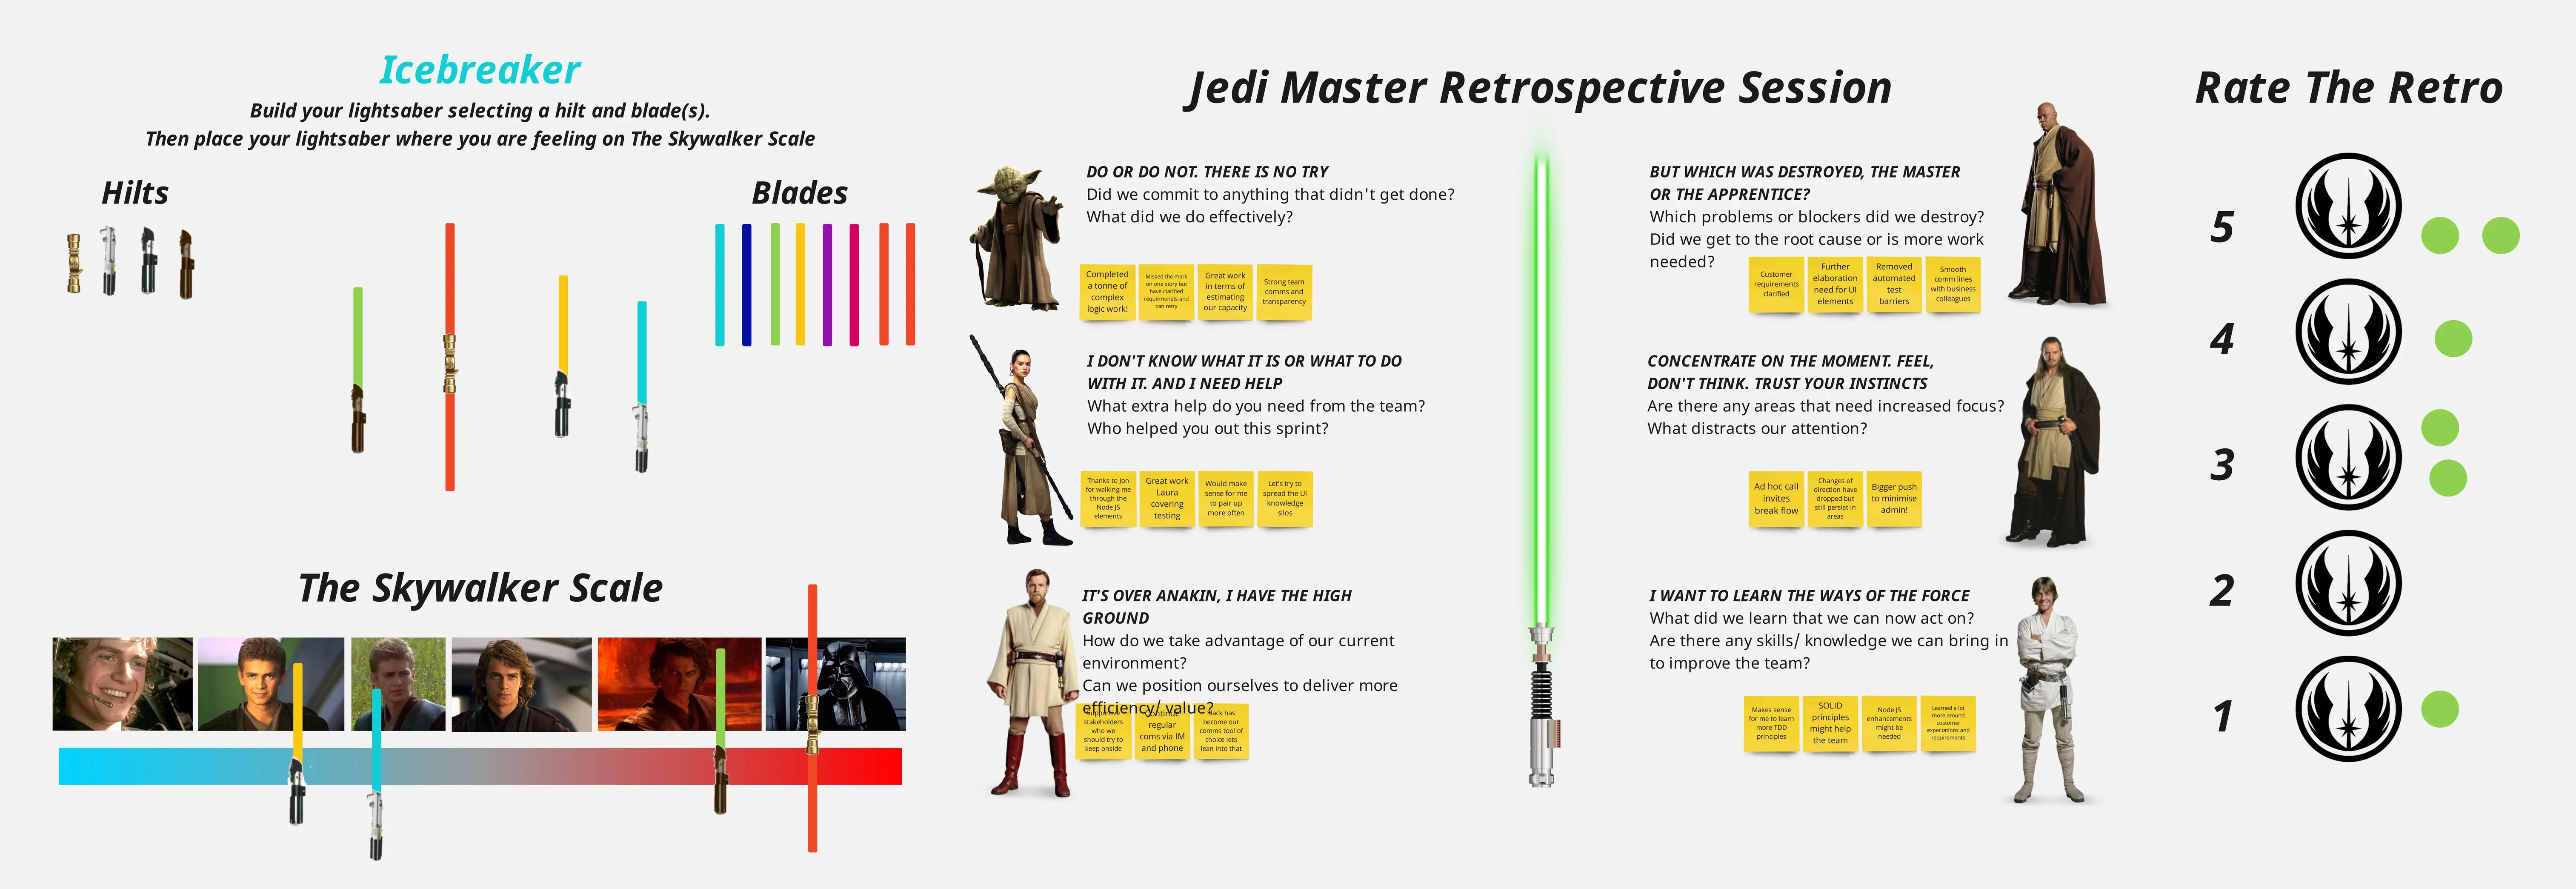 Template cover of Star Wars Jedi Master Retrospective